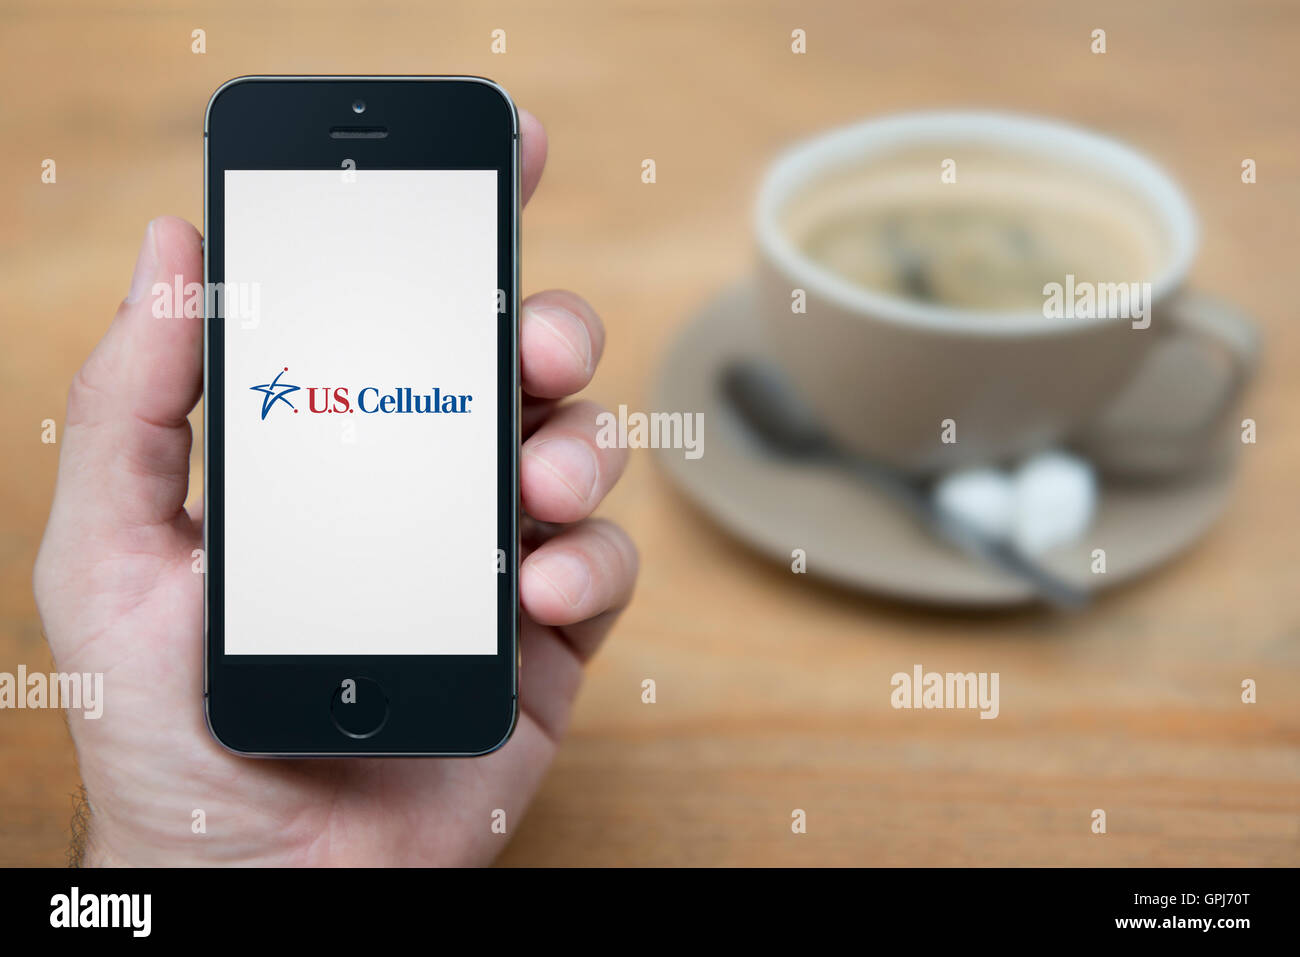 Un homme se penche sur son iPhone qui affiche le logo de l'opérateur de télécommunications cellulaires, avec du café (usage éditorial uniquement). Banque D'Images